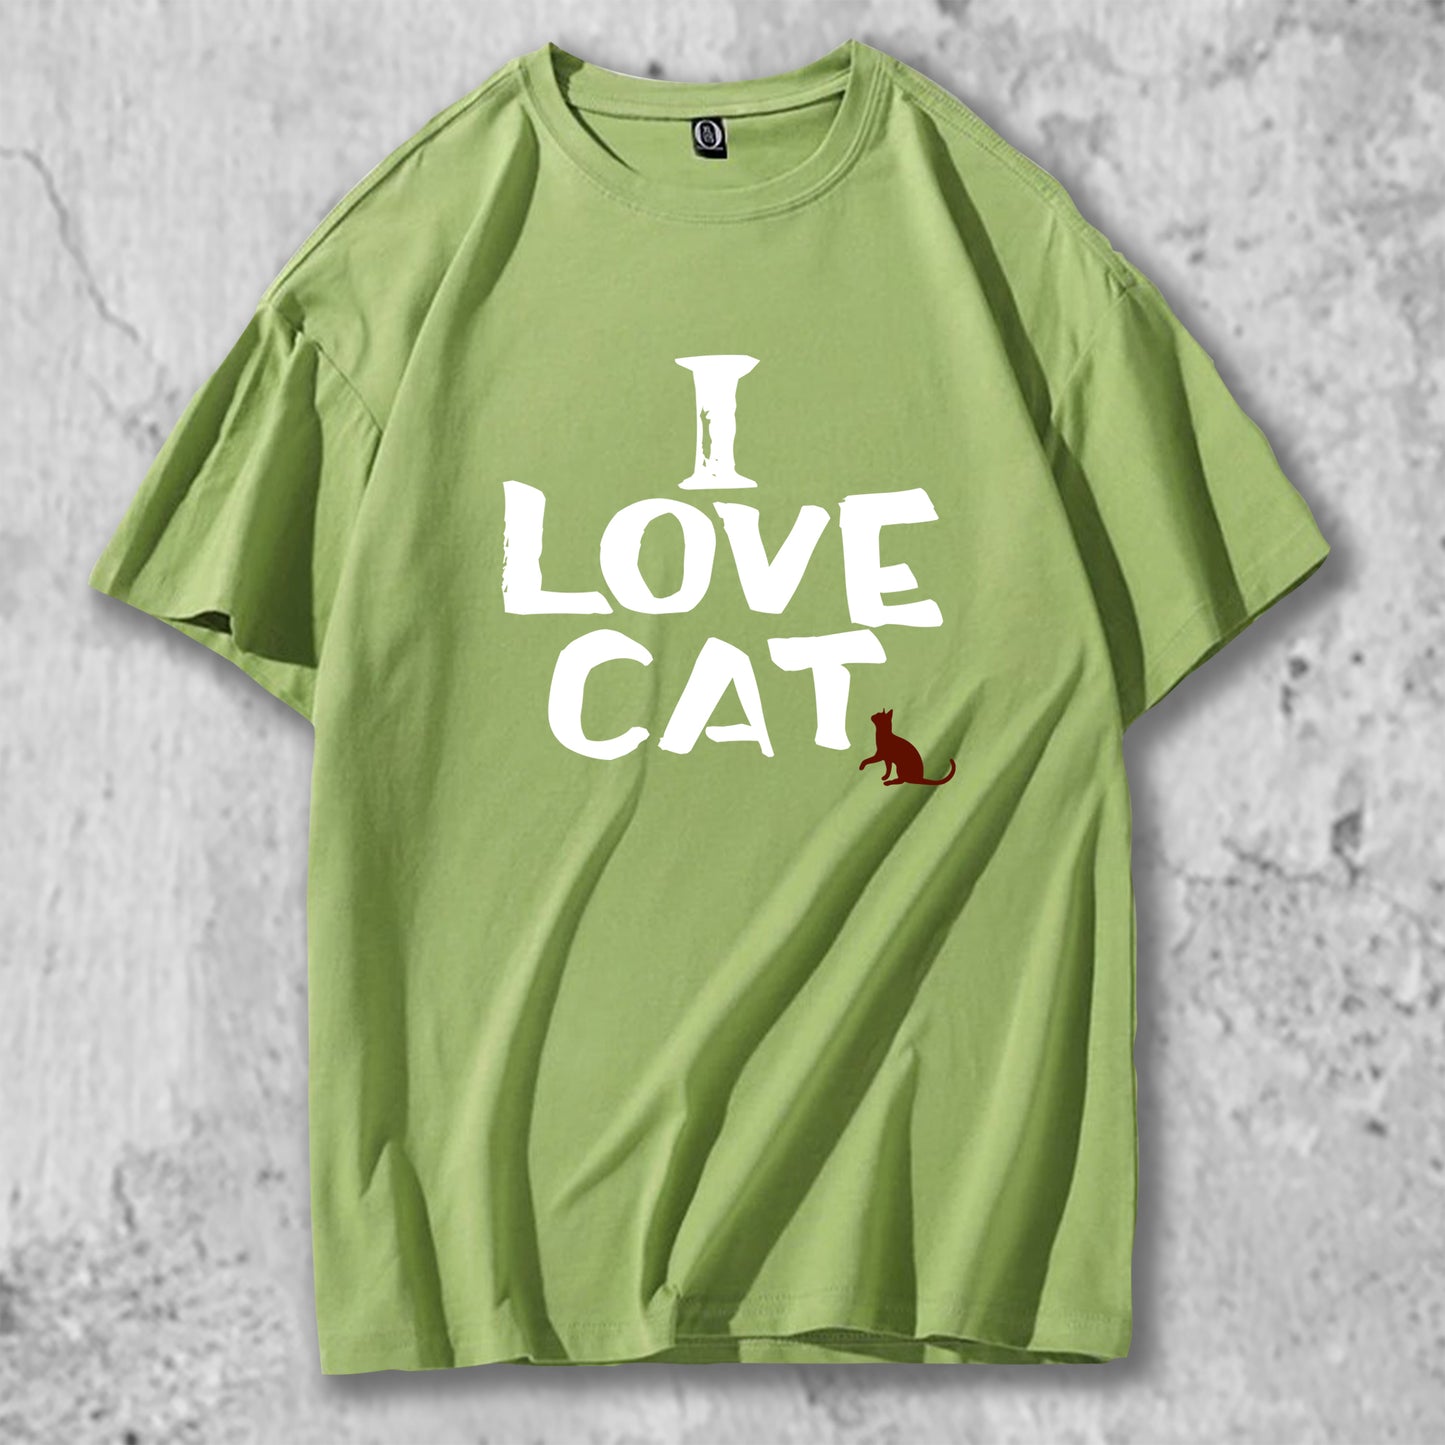 I LOVE CATと書かれたＴシャツのグリーン